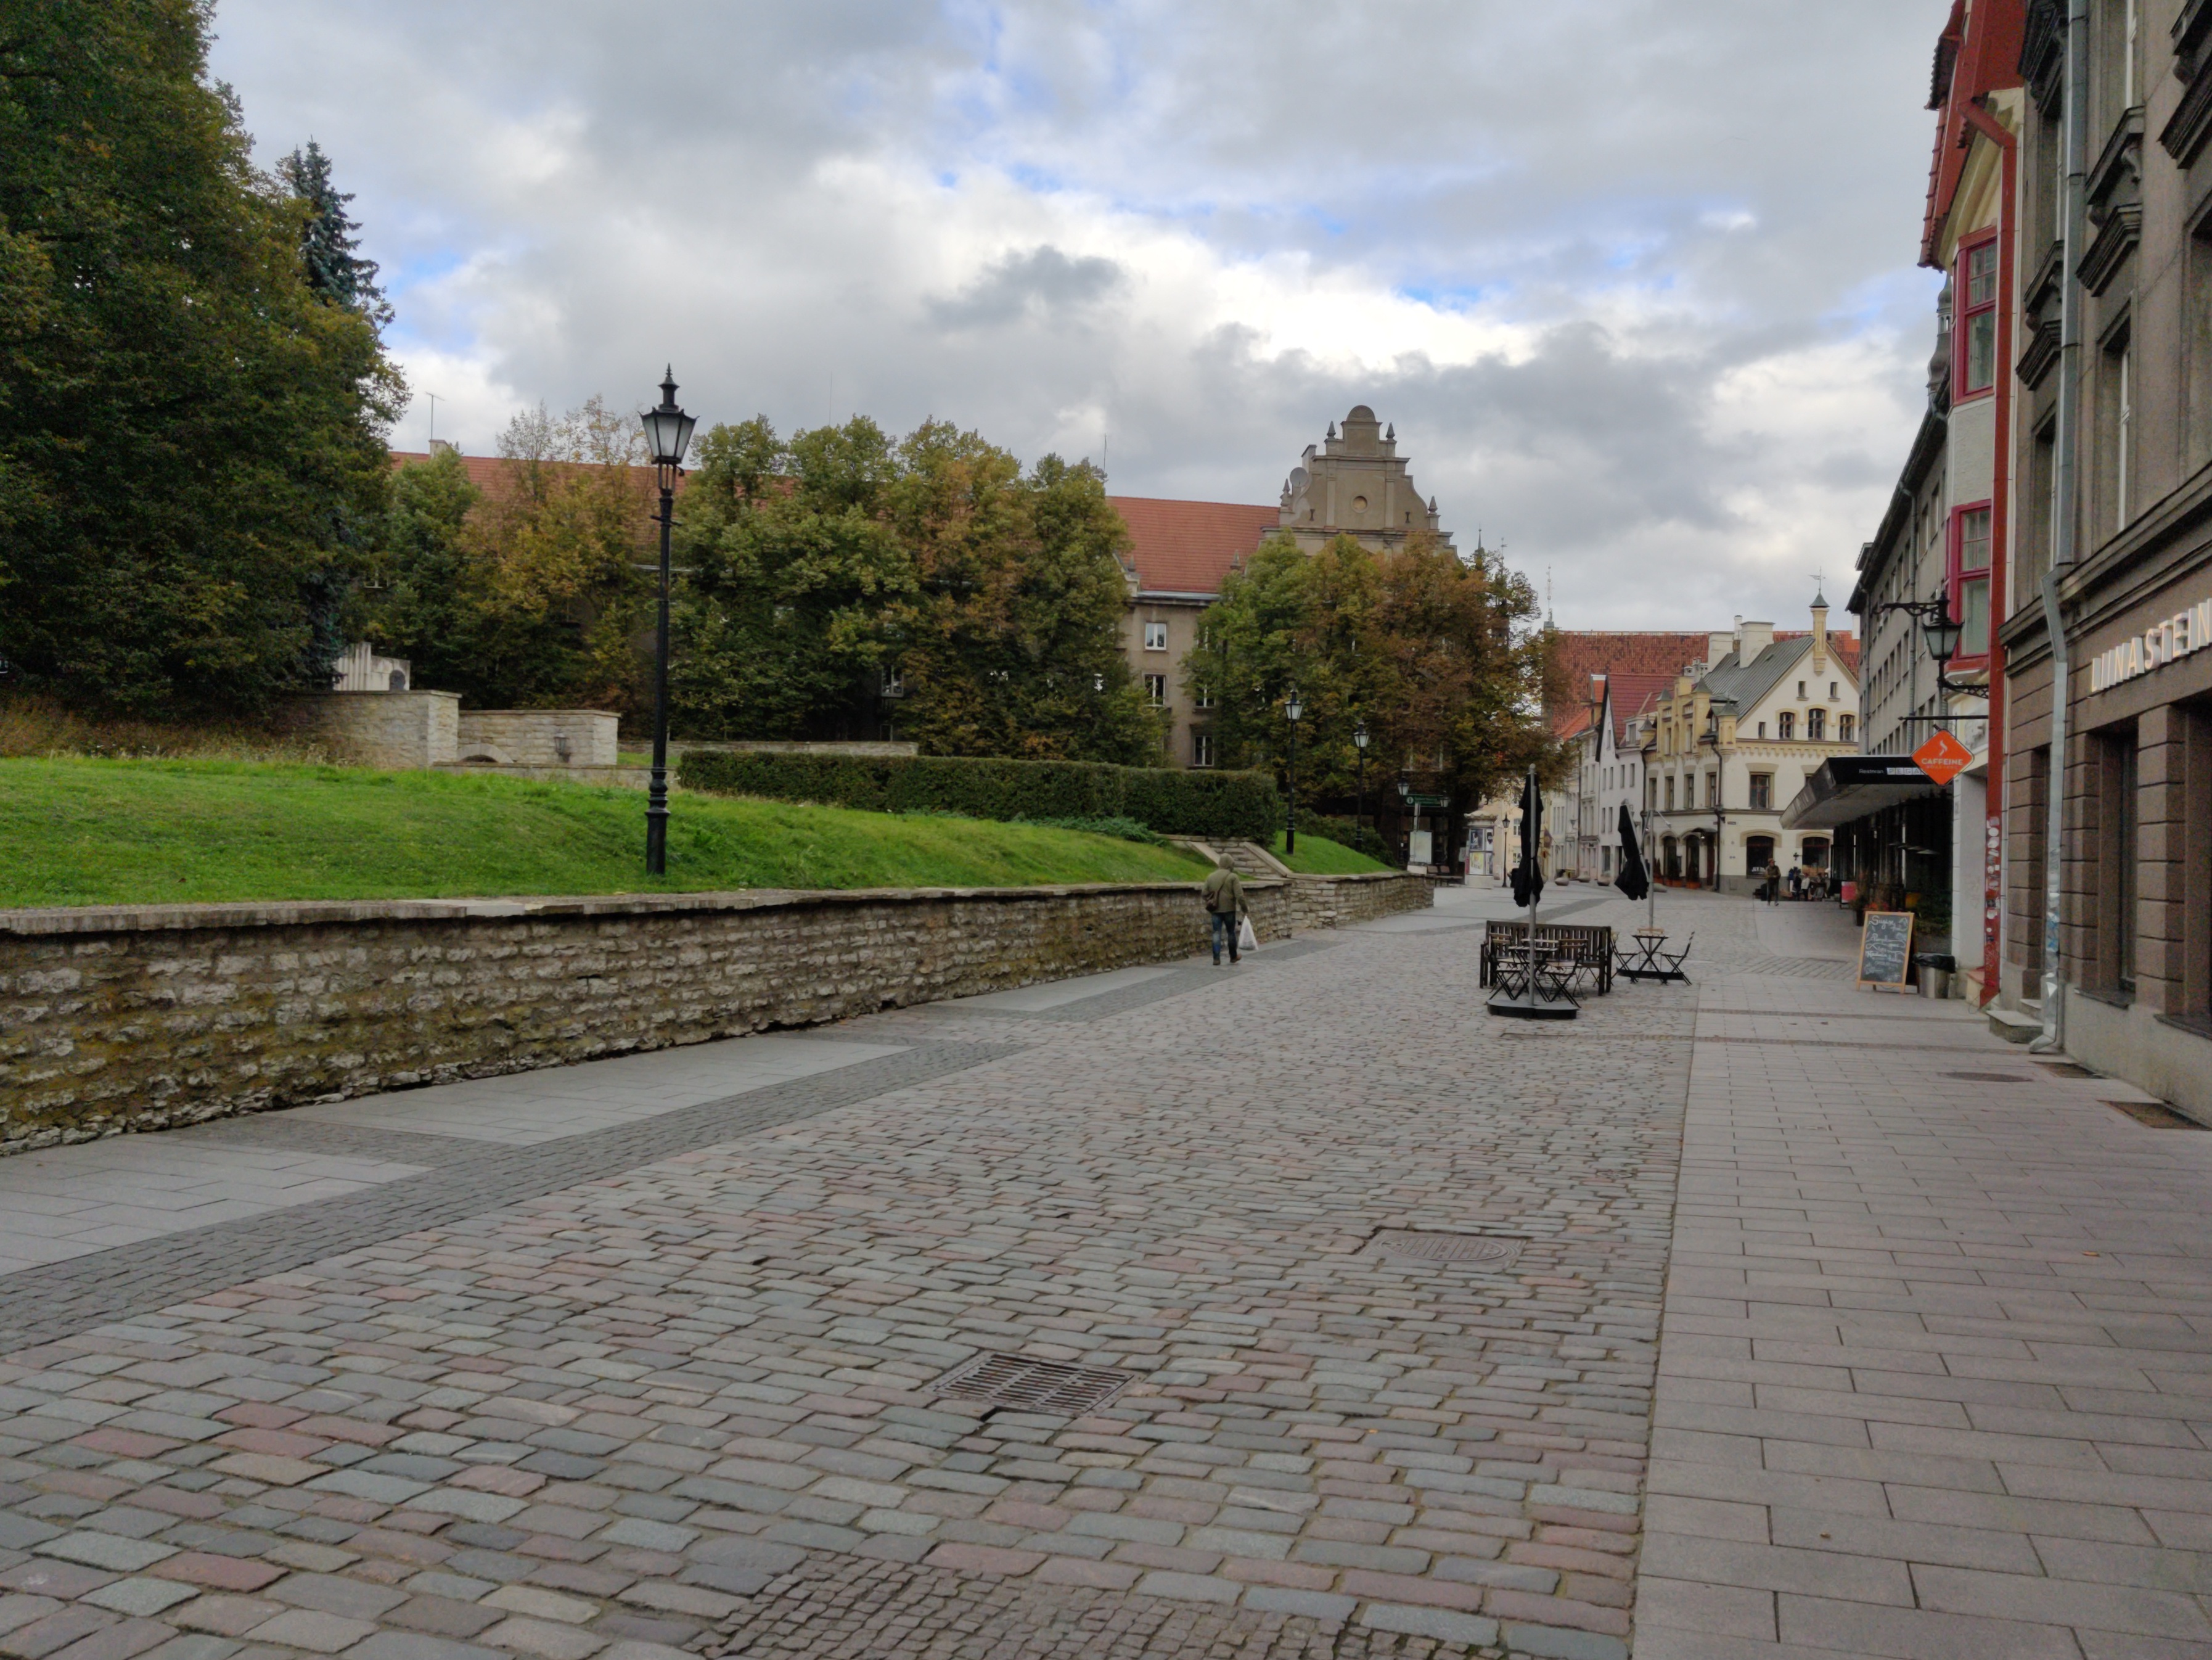 Harju Street in Tallinn Old Town rephoto